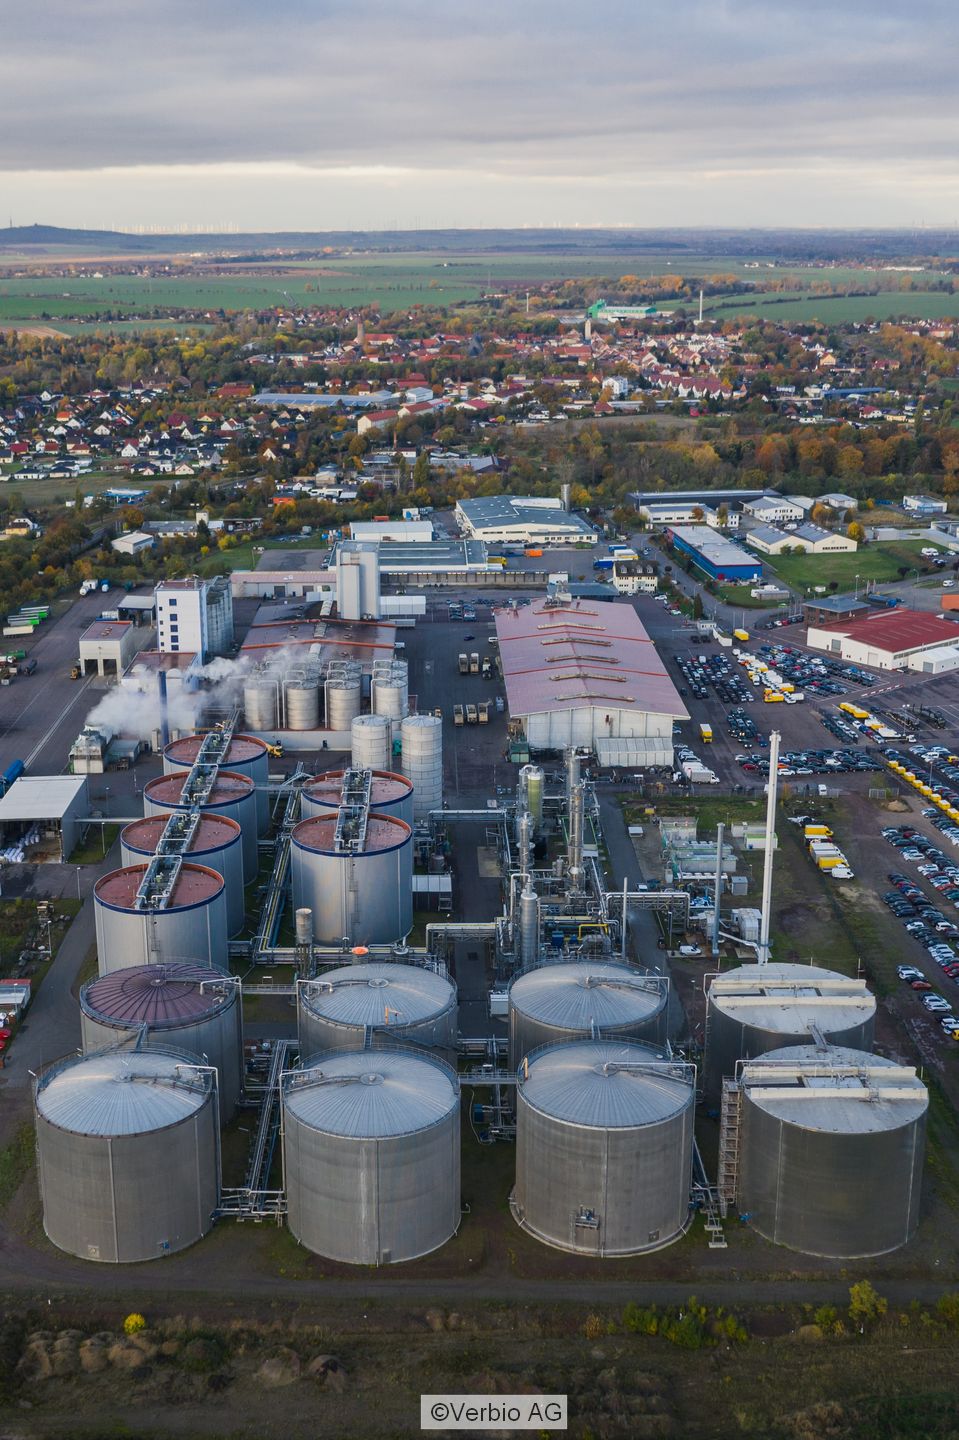 Standort der Verbio AG in Zorbig mit vielen Gasöagern